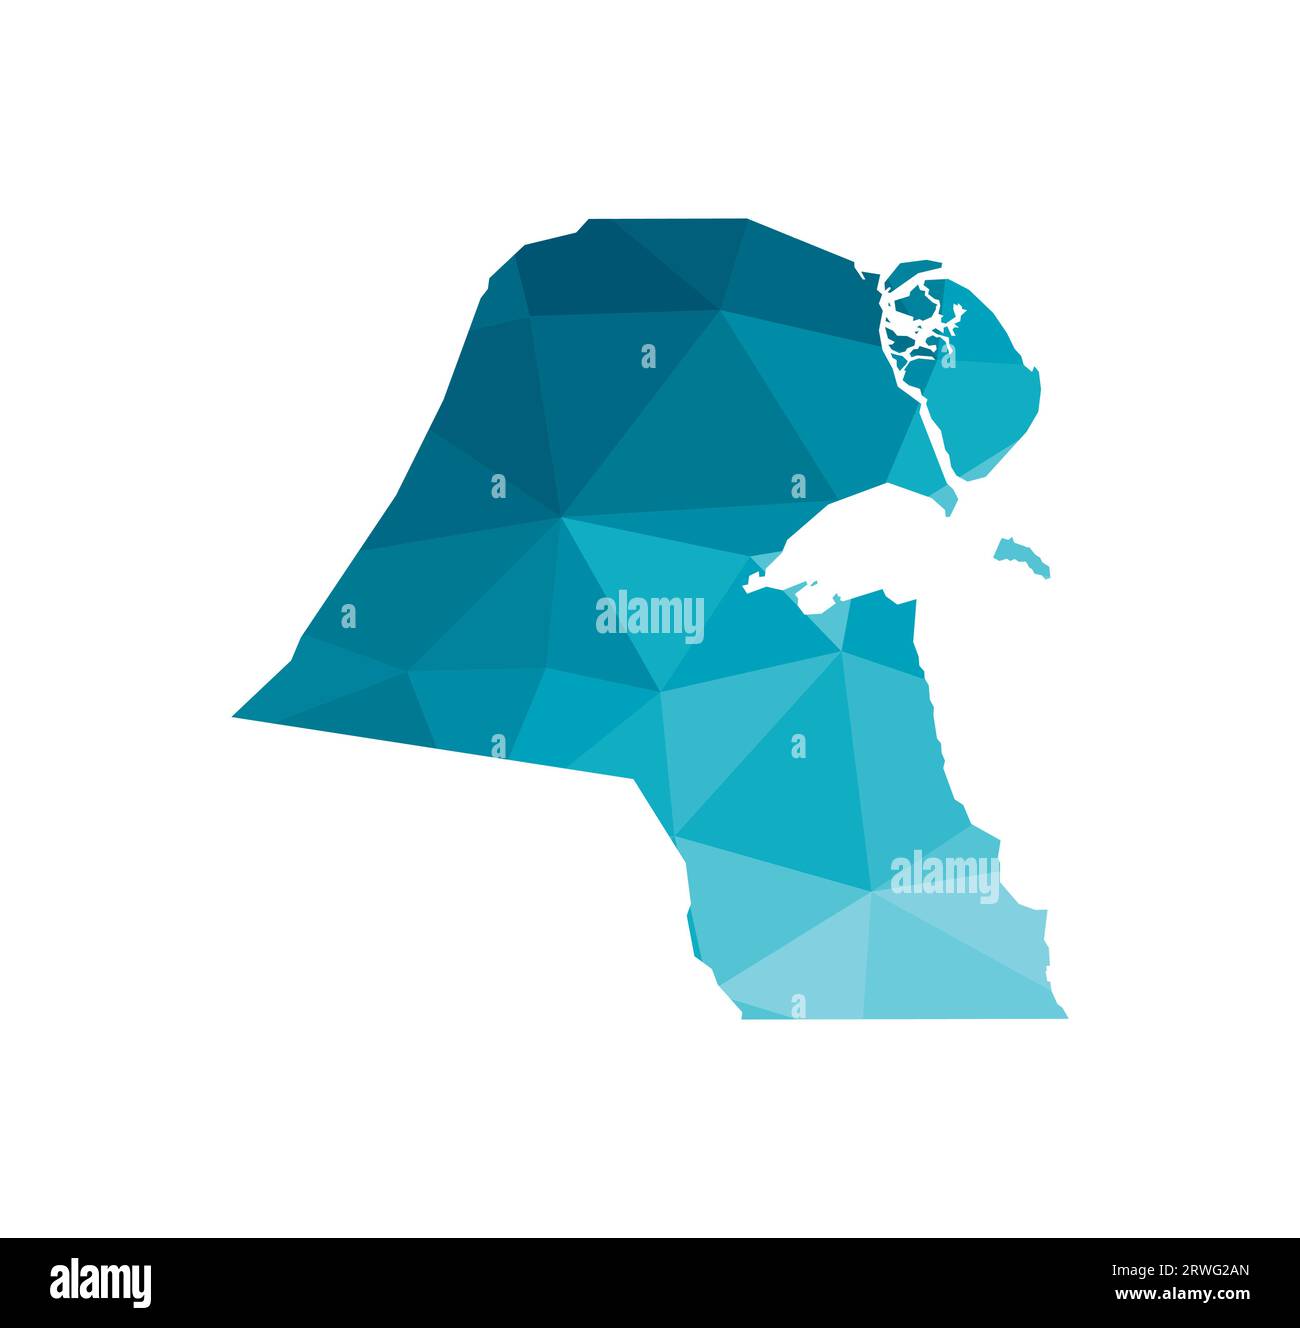 Vektor isolierte Illustration Symbol mit vereinfachter blauer Silhouette des Staates Kuwait Karte. Polygonaler geometrischer Stil, dreieckige Formen. Weißer Backgrou Stock Vektor